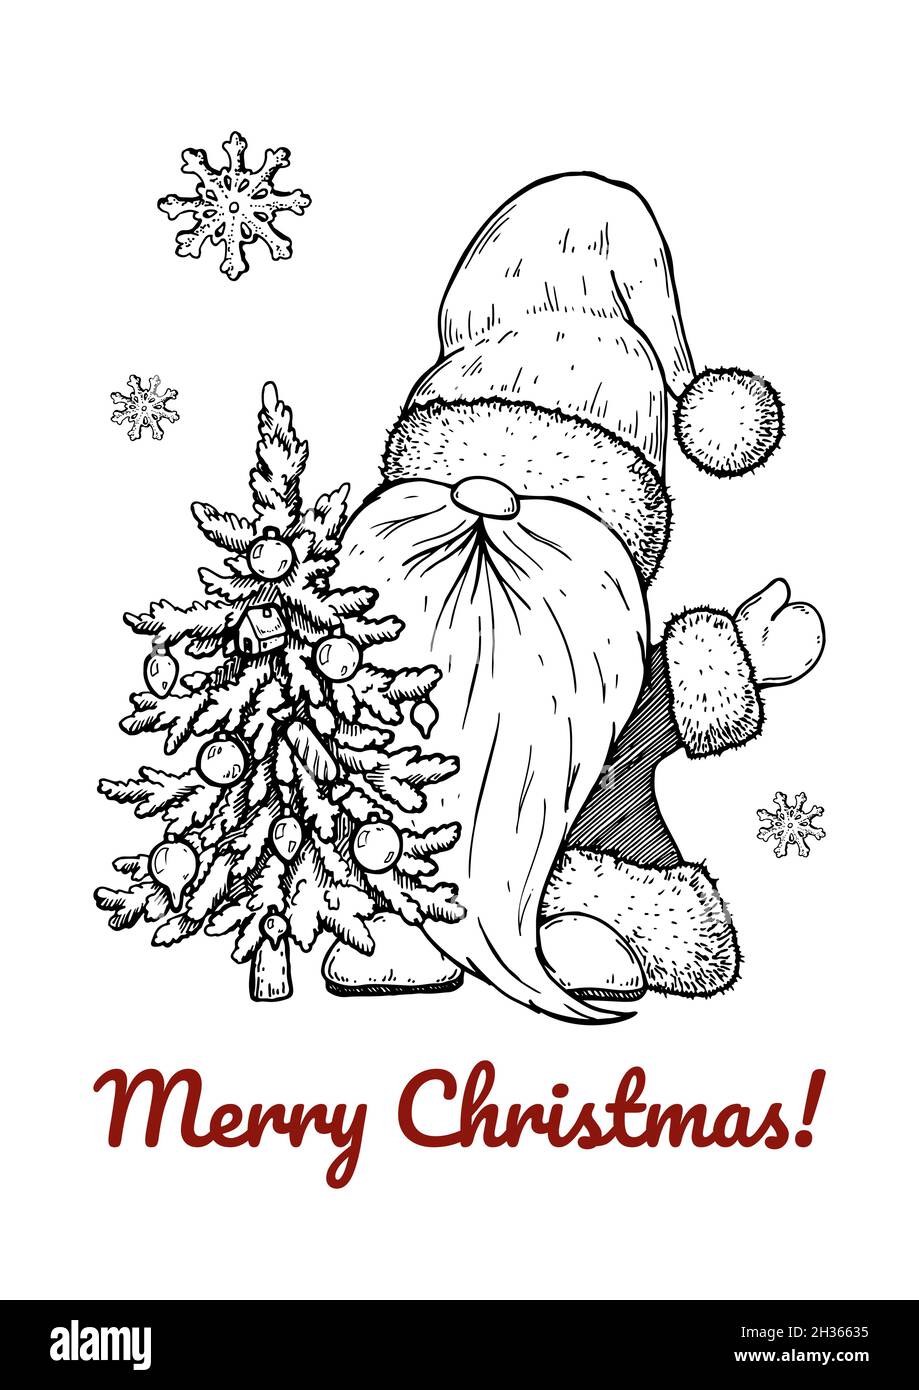 Biglietto d'auguri natalizio disegnato a mano con Santa Clause e albero di Natale. Illustrazione vettoriale in stile di schizzo Illustrazione Vettoriale